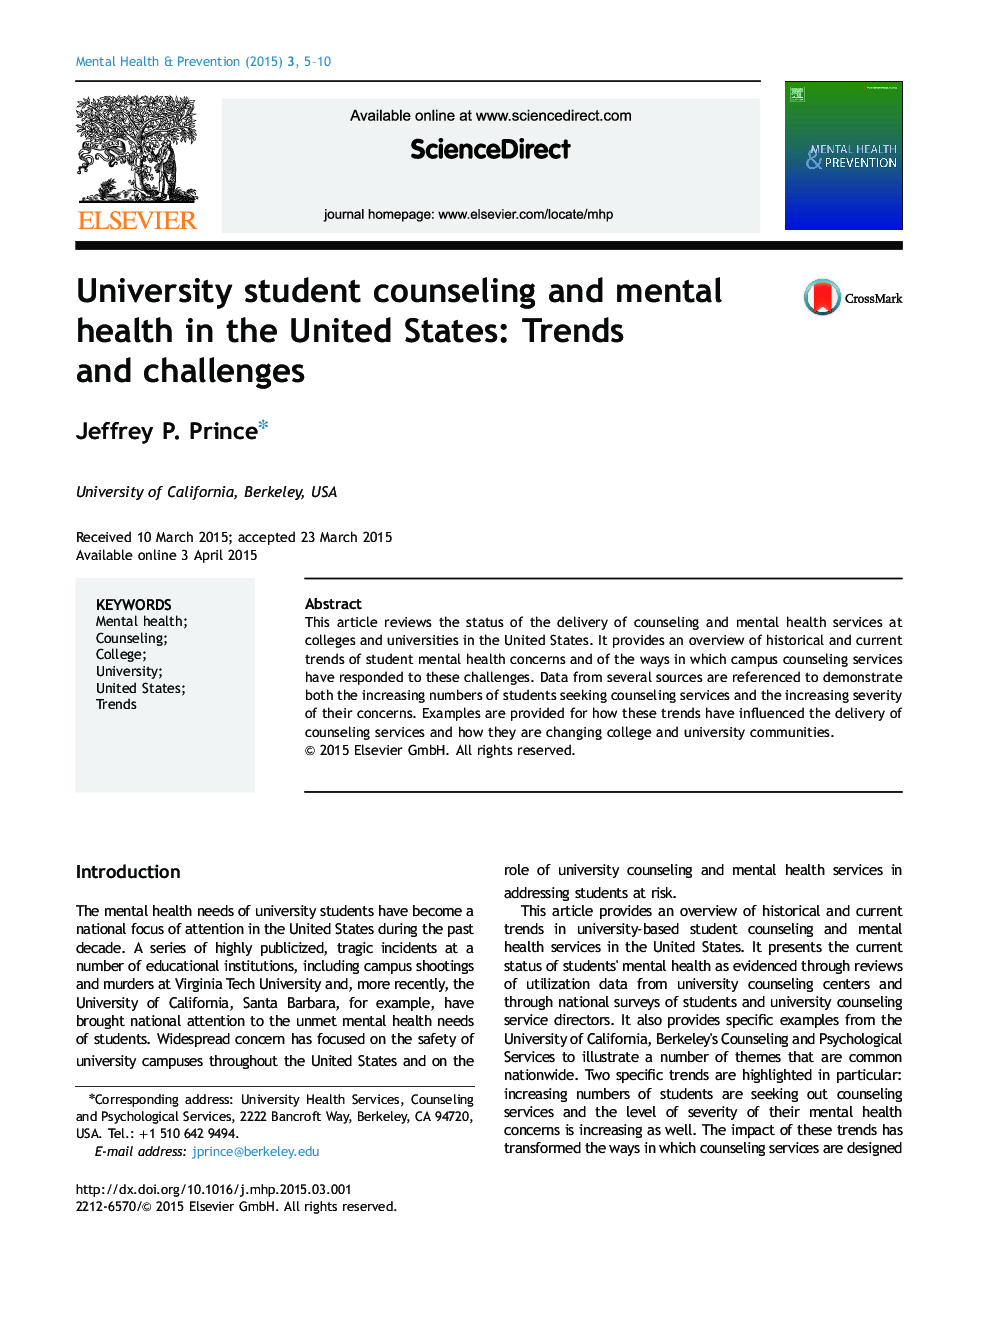 مشاوره دانشجویان دانشگاه و سلامت روان در ایالات متحده: روند و چالش ها 